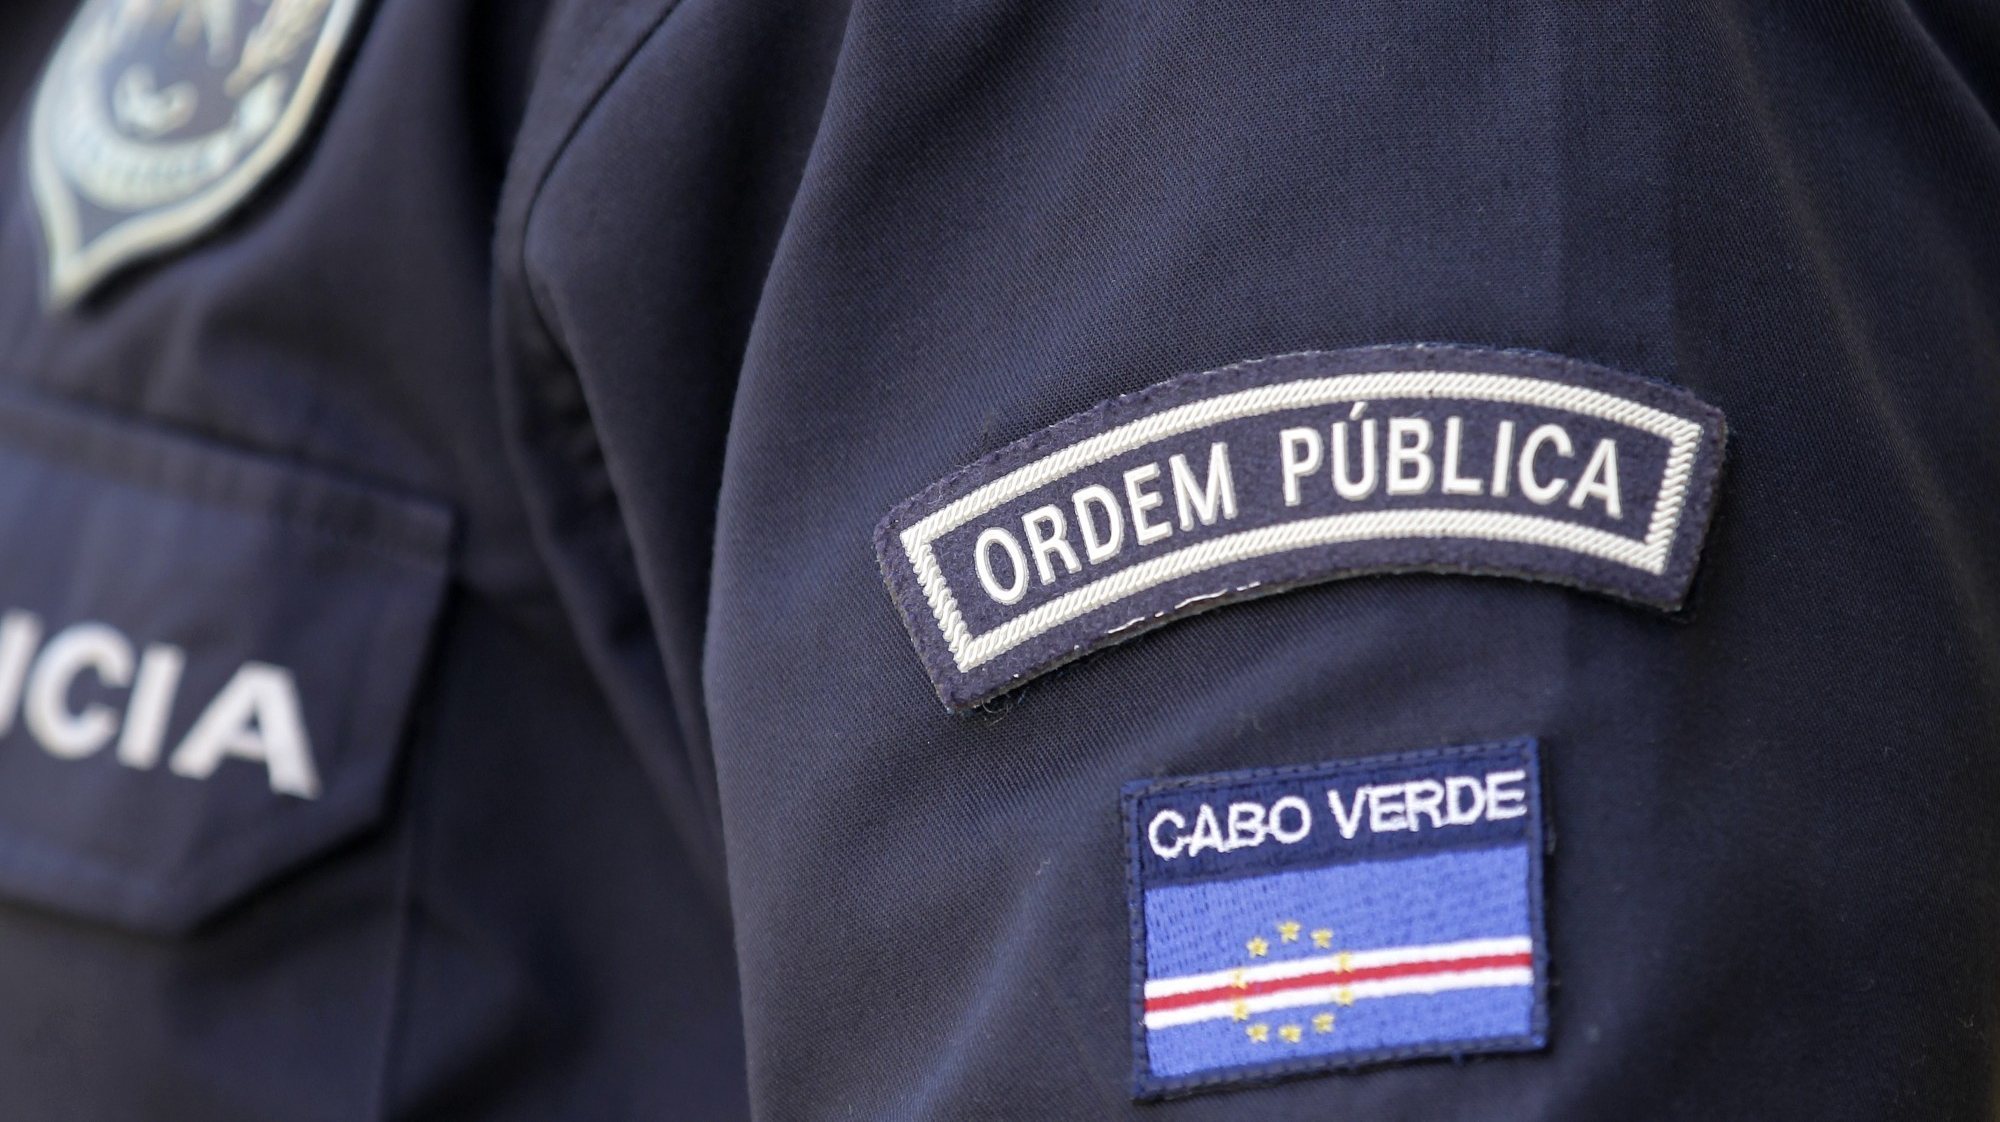 Polícia Nacional de Cabo Verde